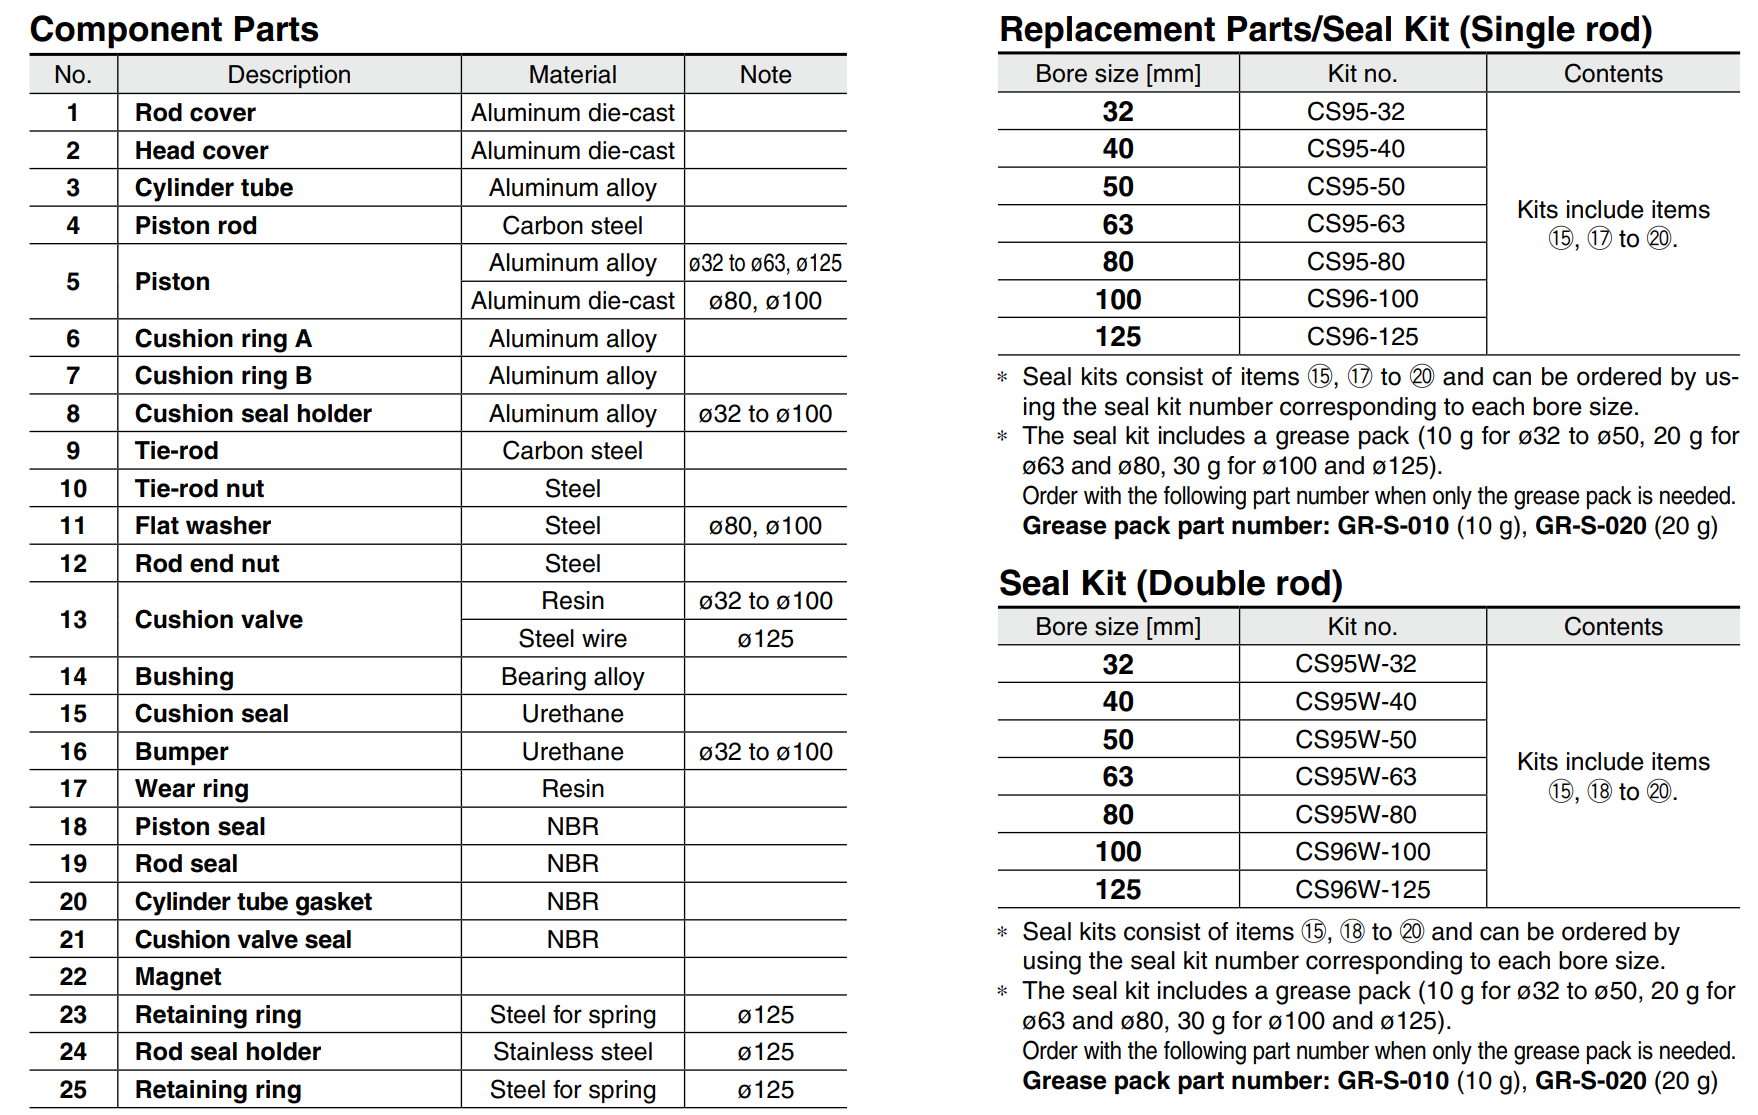 ISO15552 SMC CP96 Serie Doppelmodell Standardluftzylinder Pneumatischer Zylinder CP96SDB CP96SB